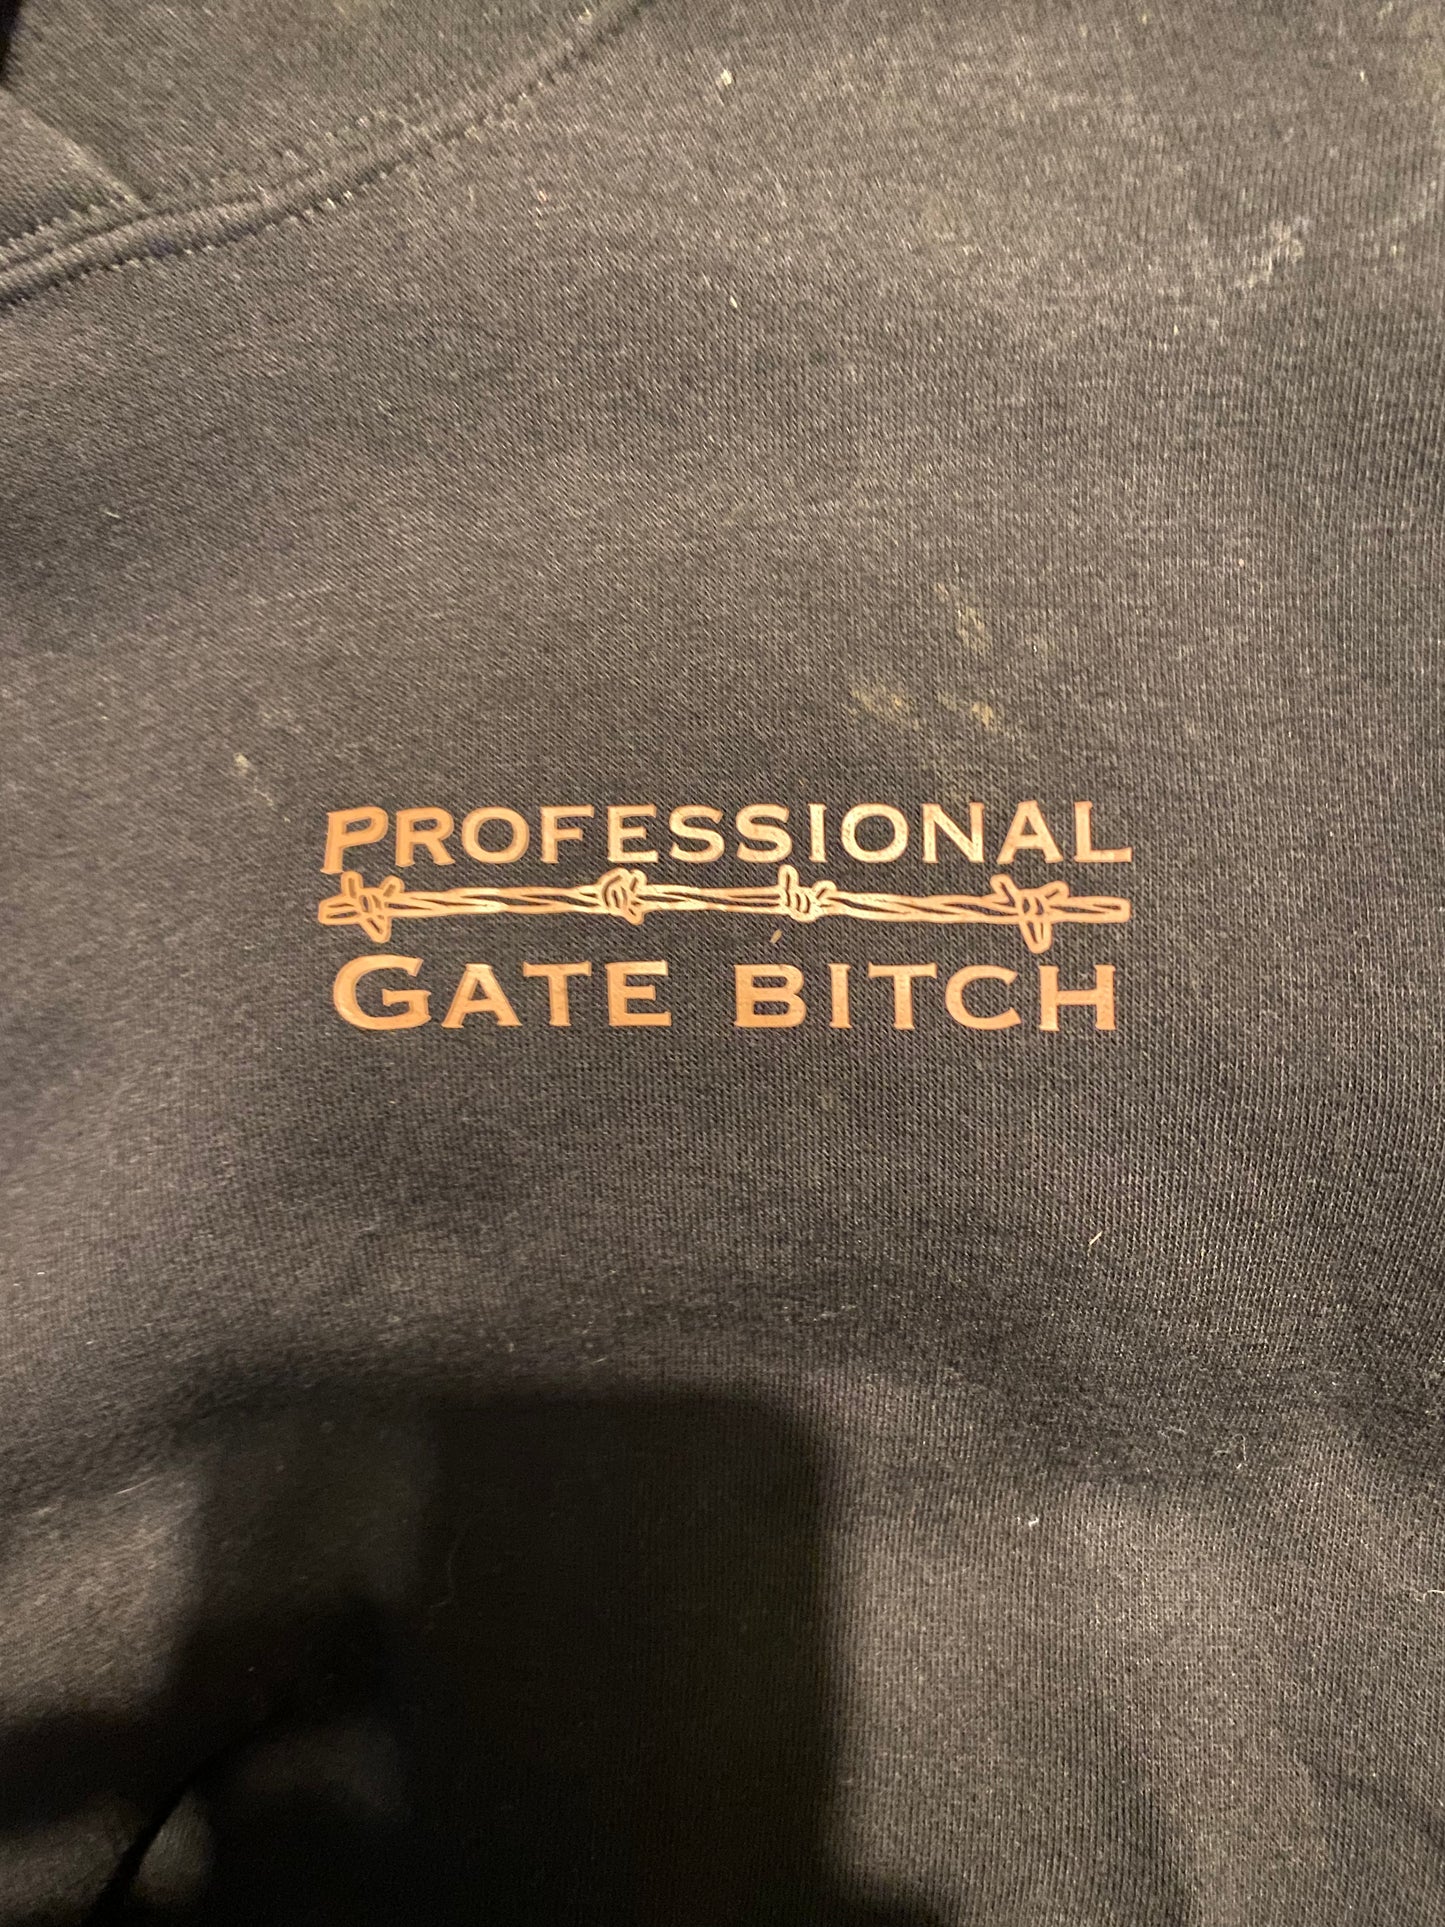 Professional gate b*tch